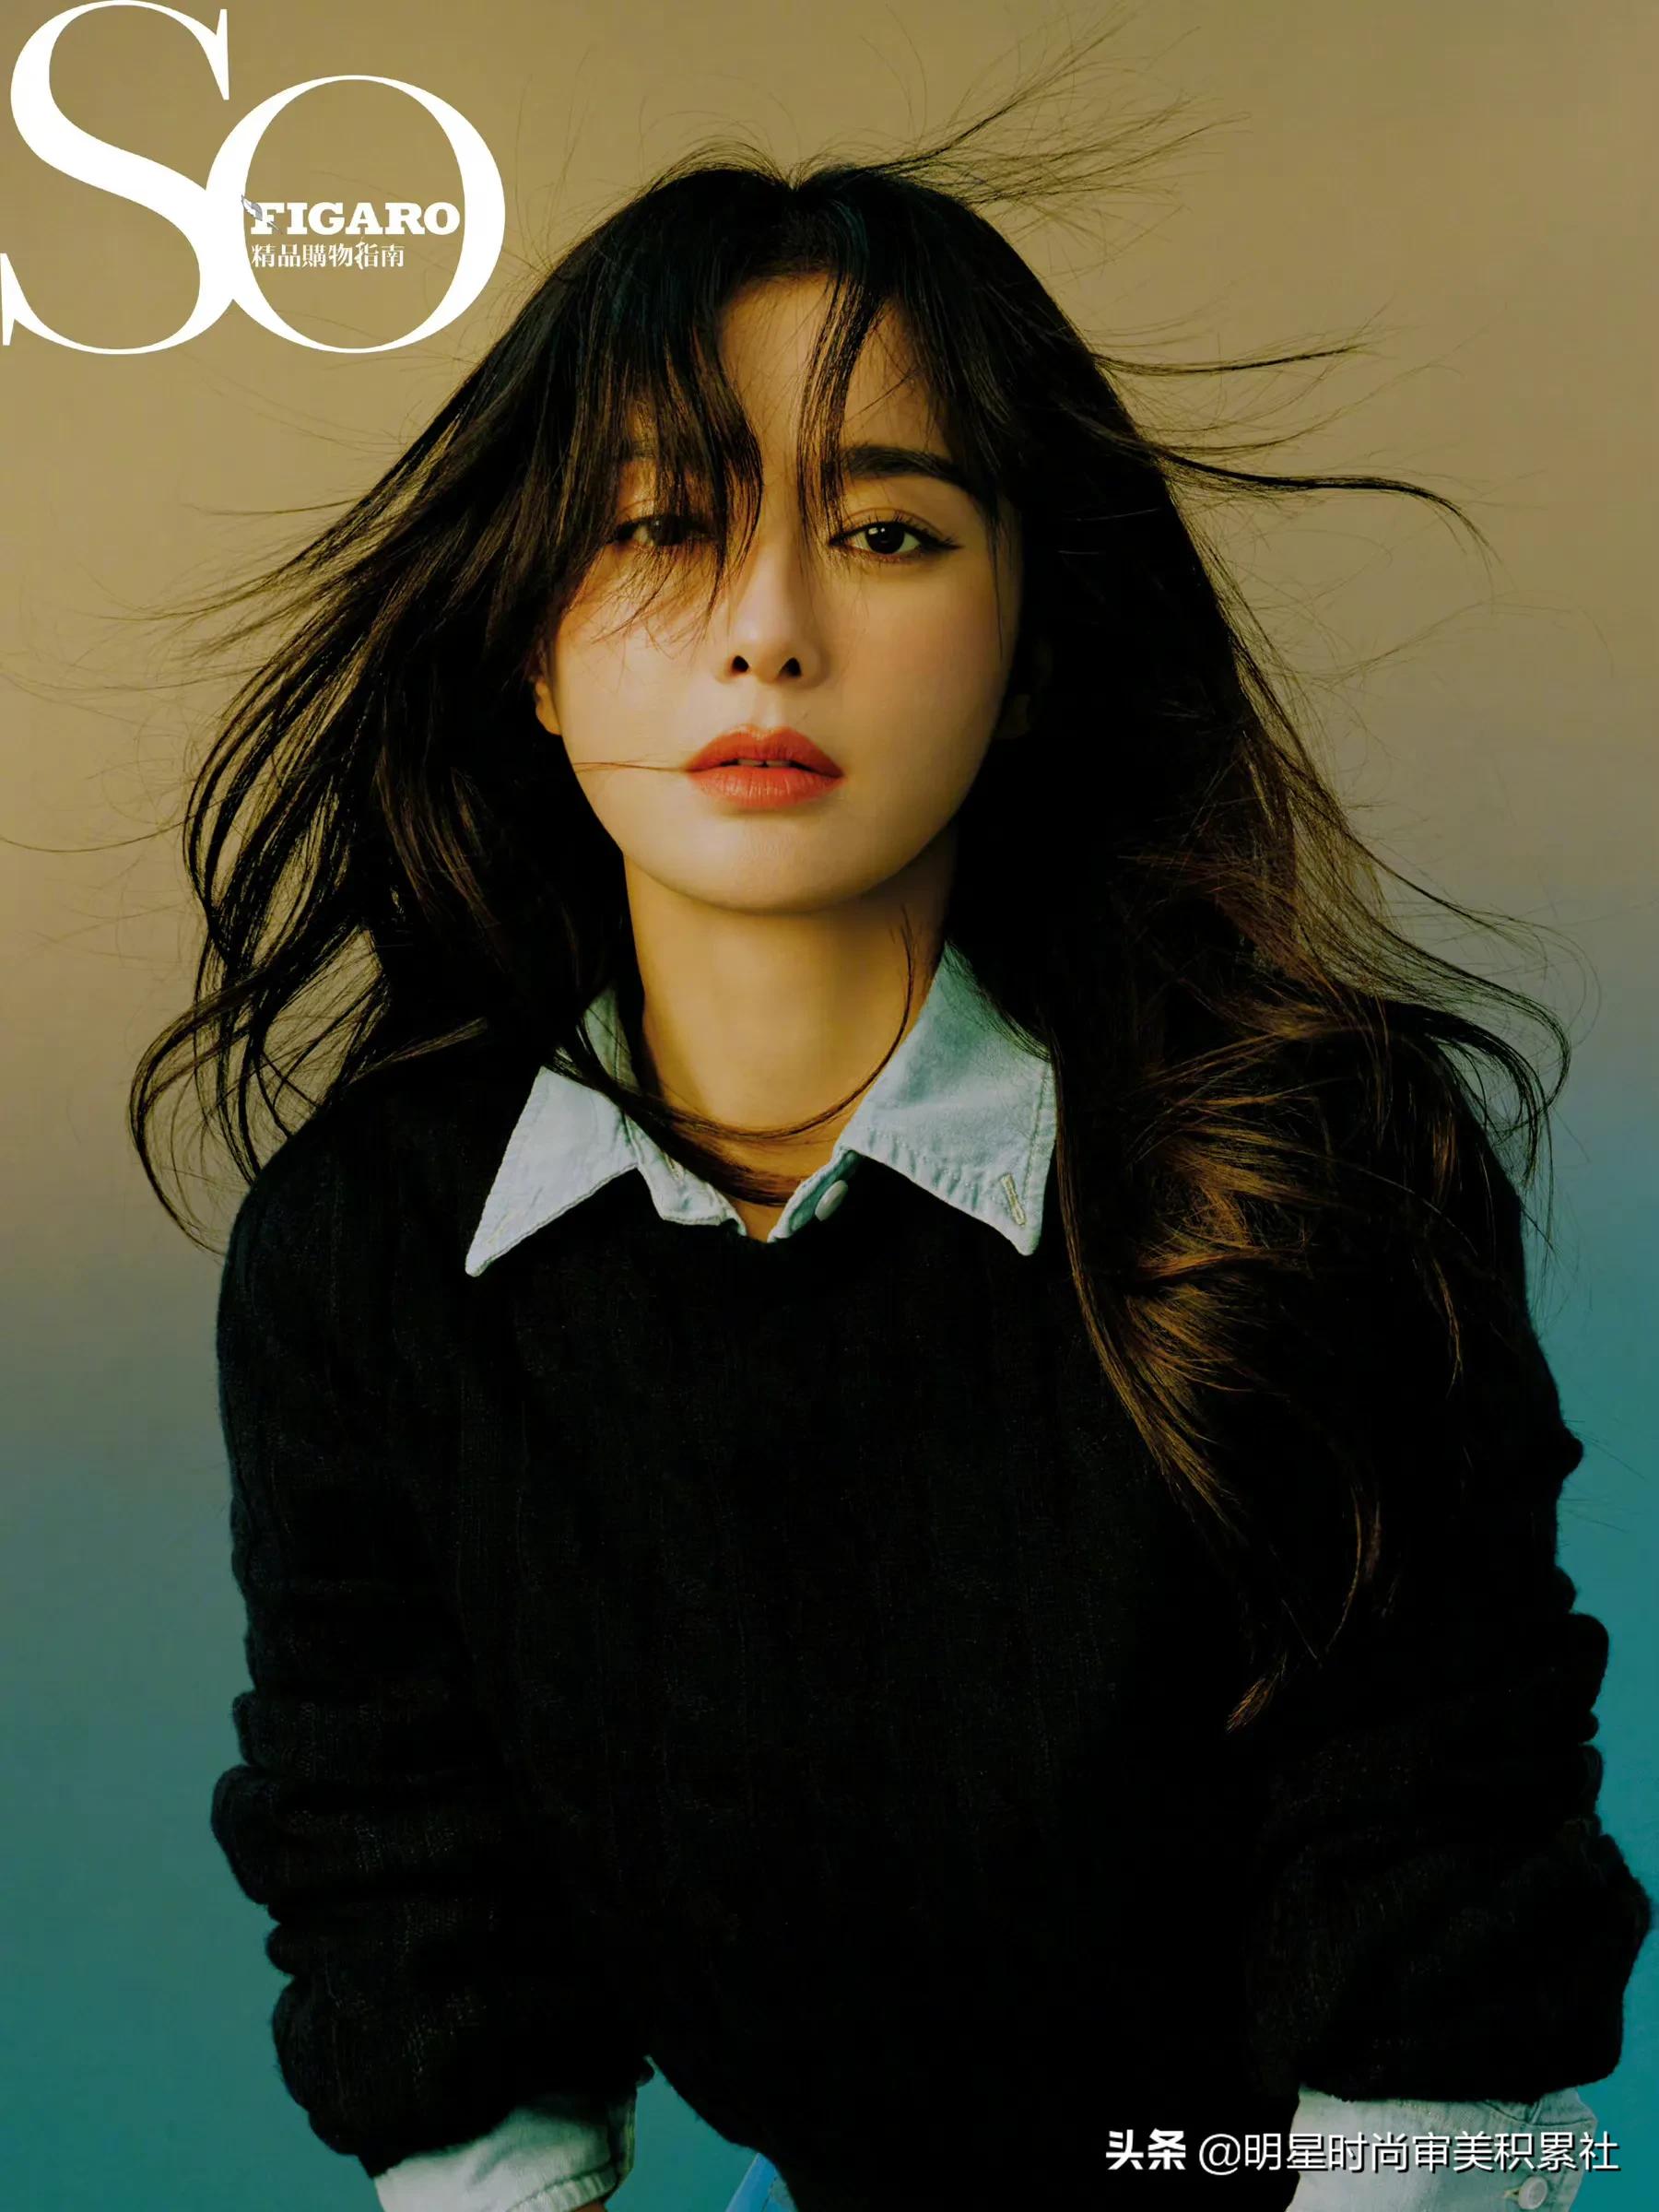 秦岚｜最新期《So Figaro》封面，精致优雅的魅力让人着迷